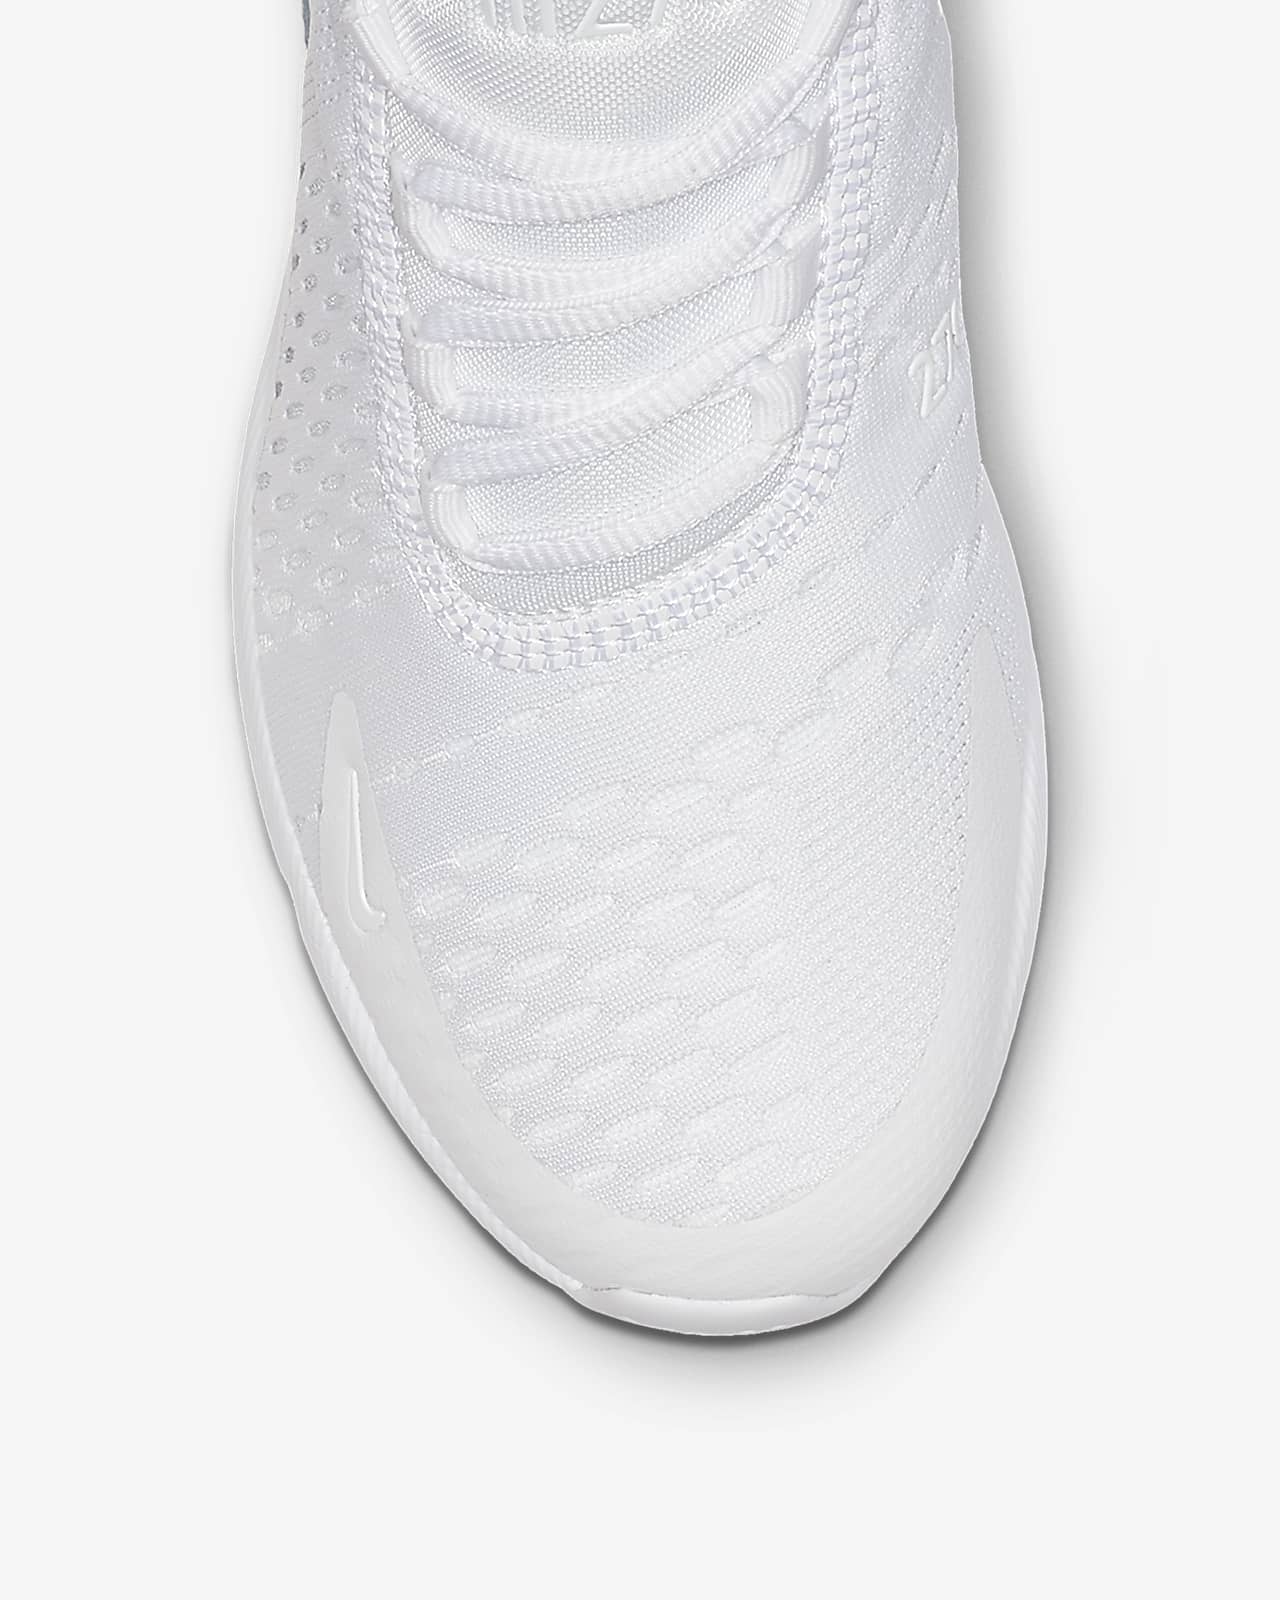 white nike shoes air max 270